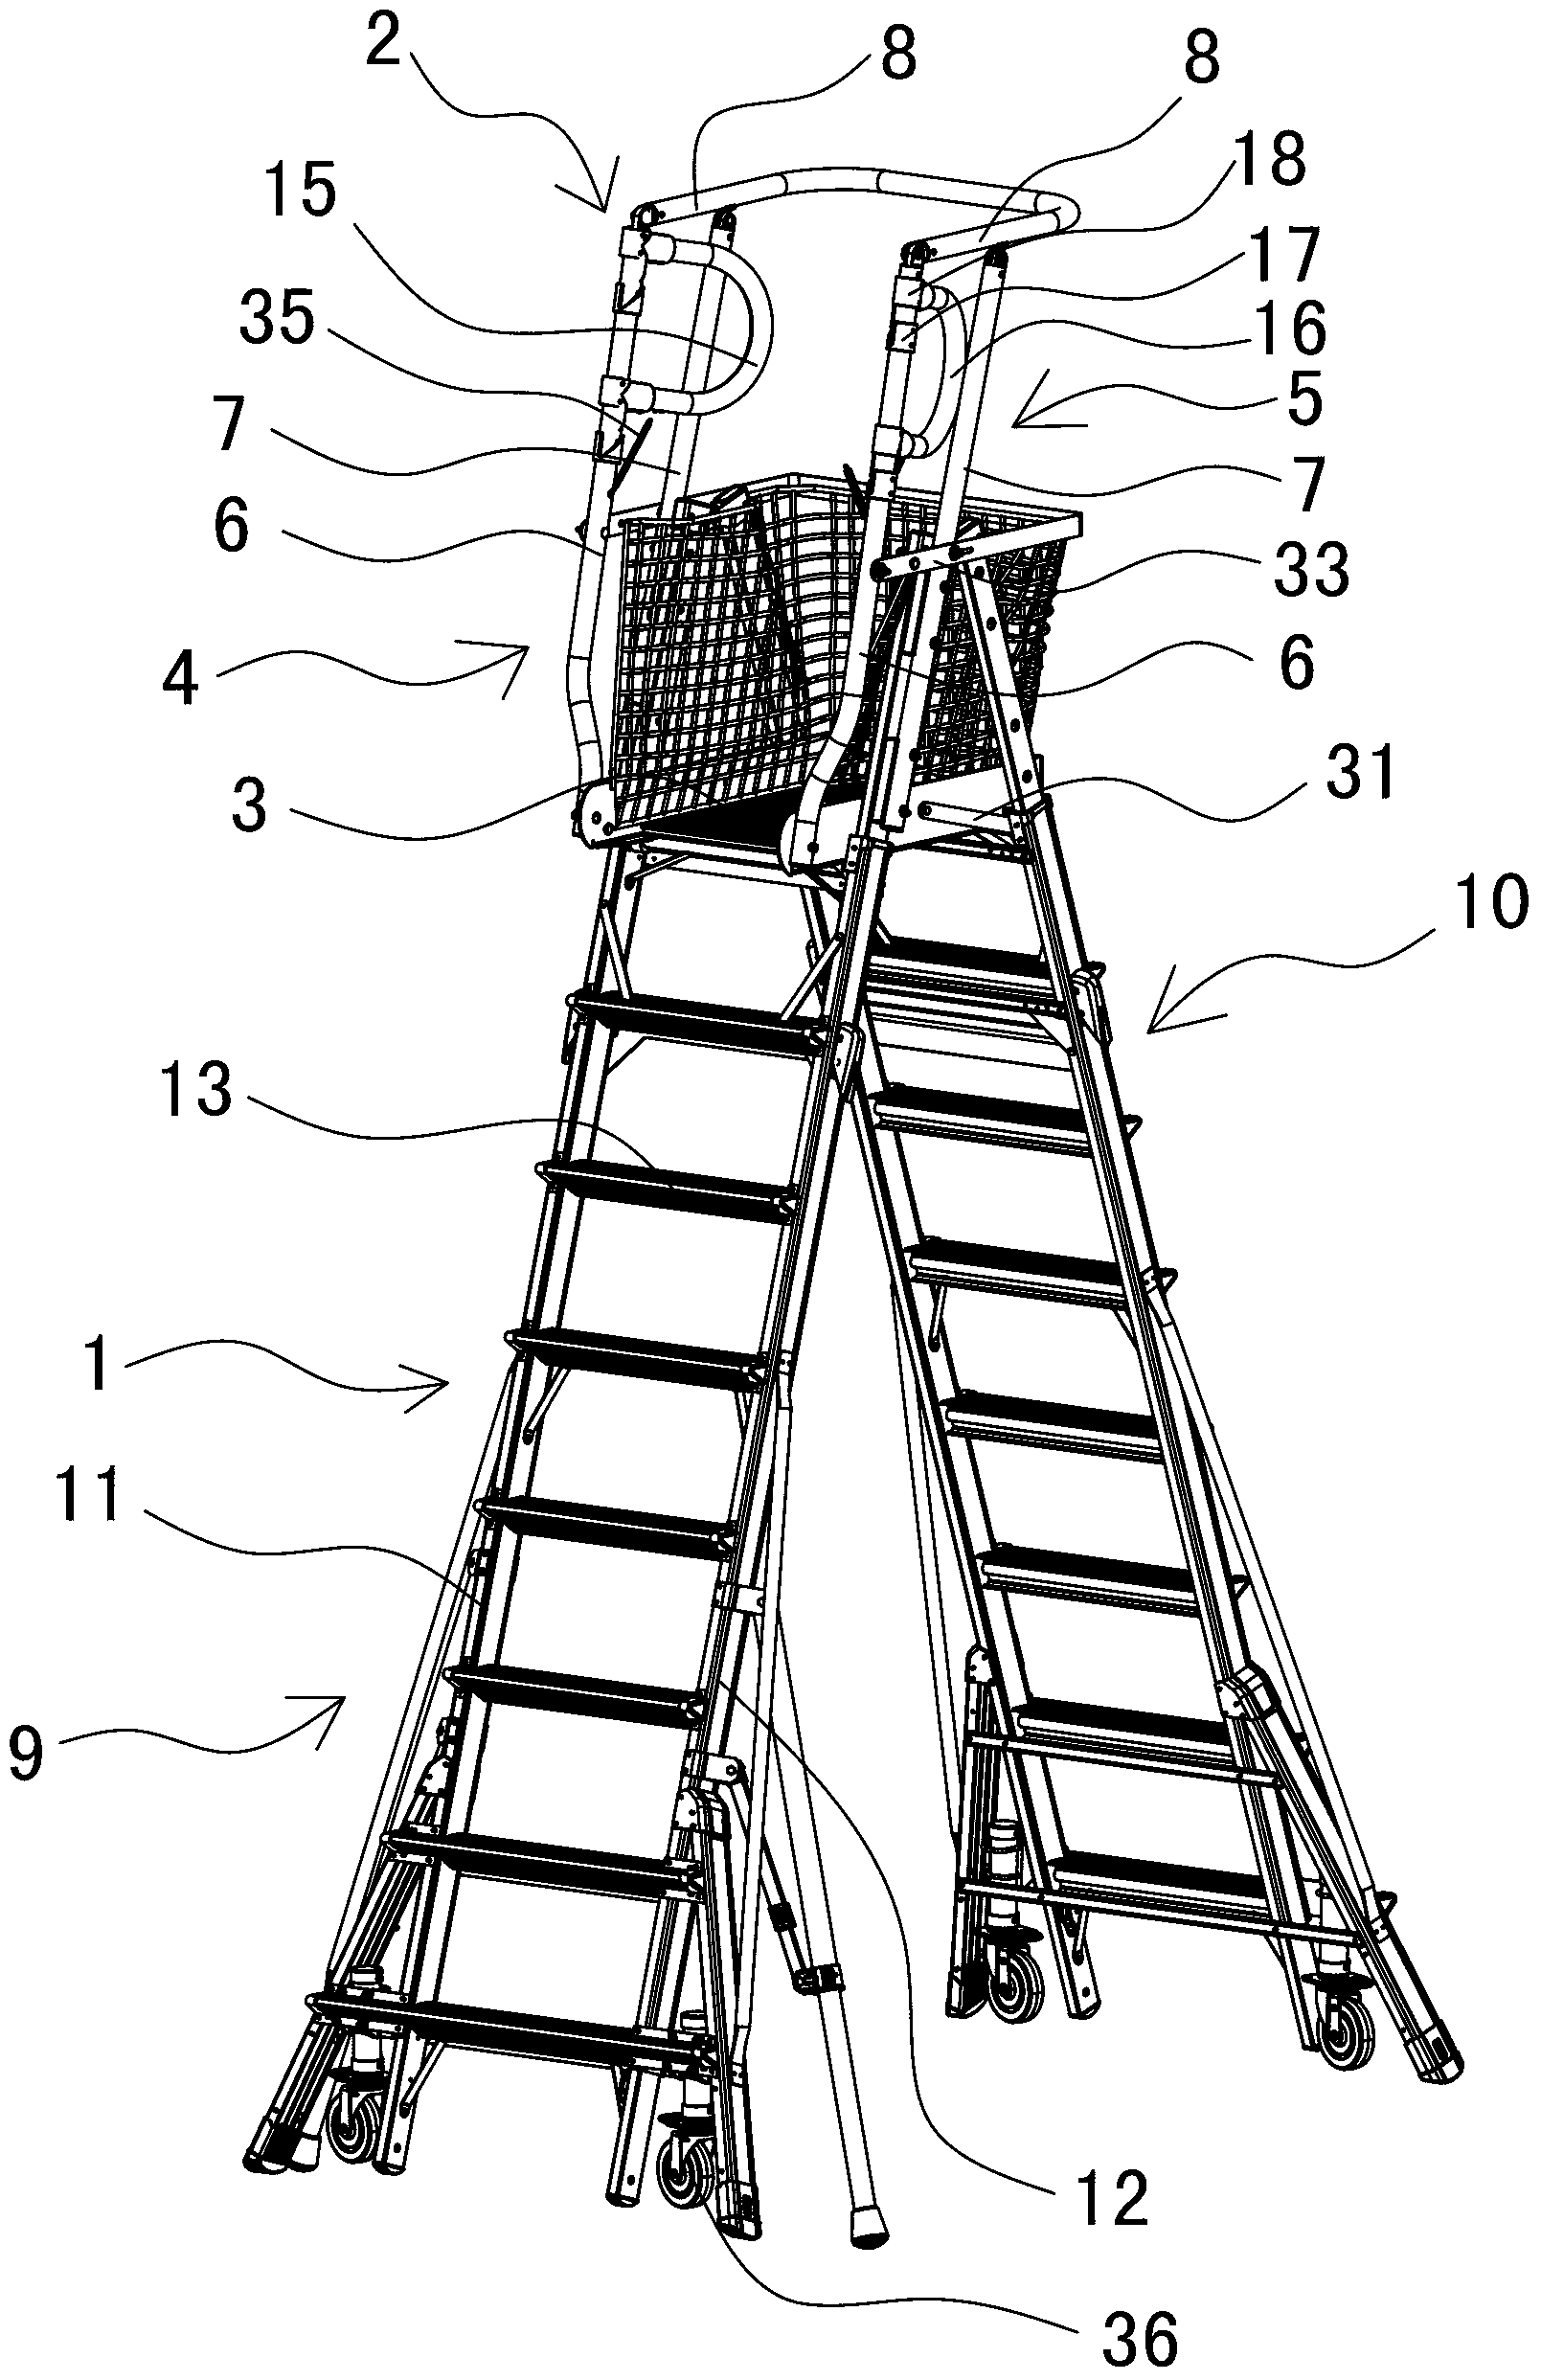 Ladder type working platform